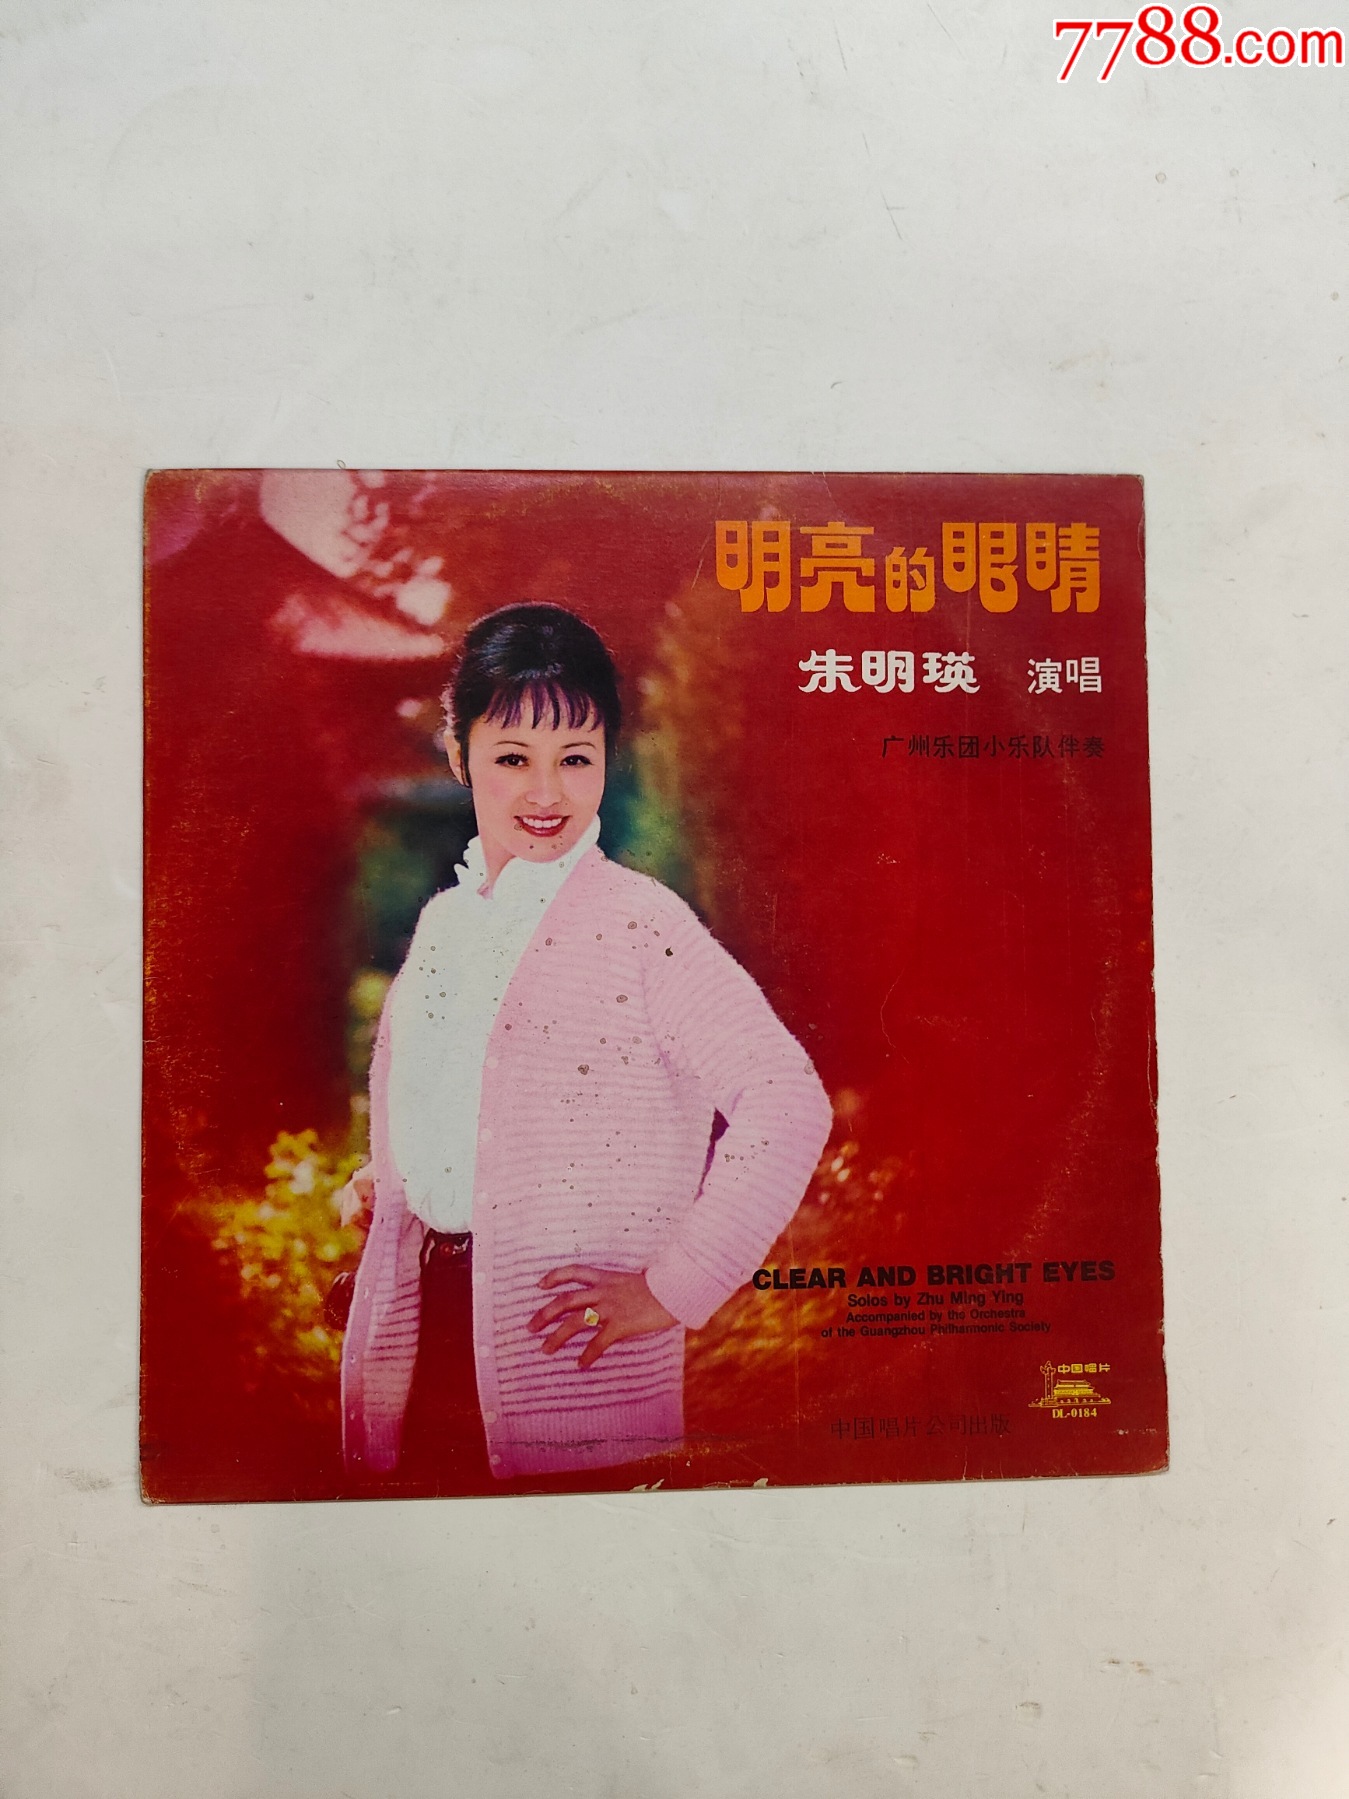 歌唱家朱明瑛专辑-价格:30元-se64278571-音乐CD-零售-7788收藏__收藏热线